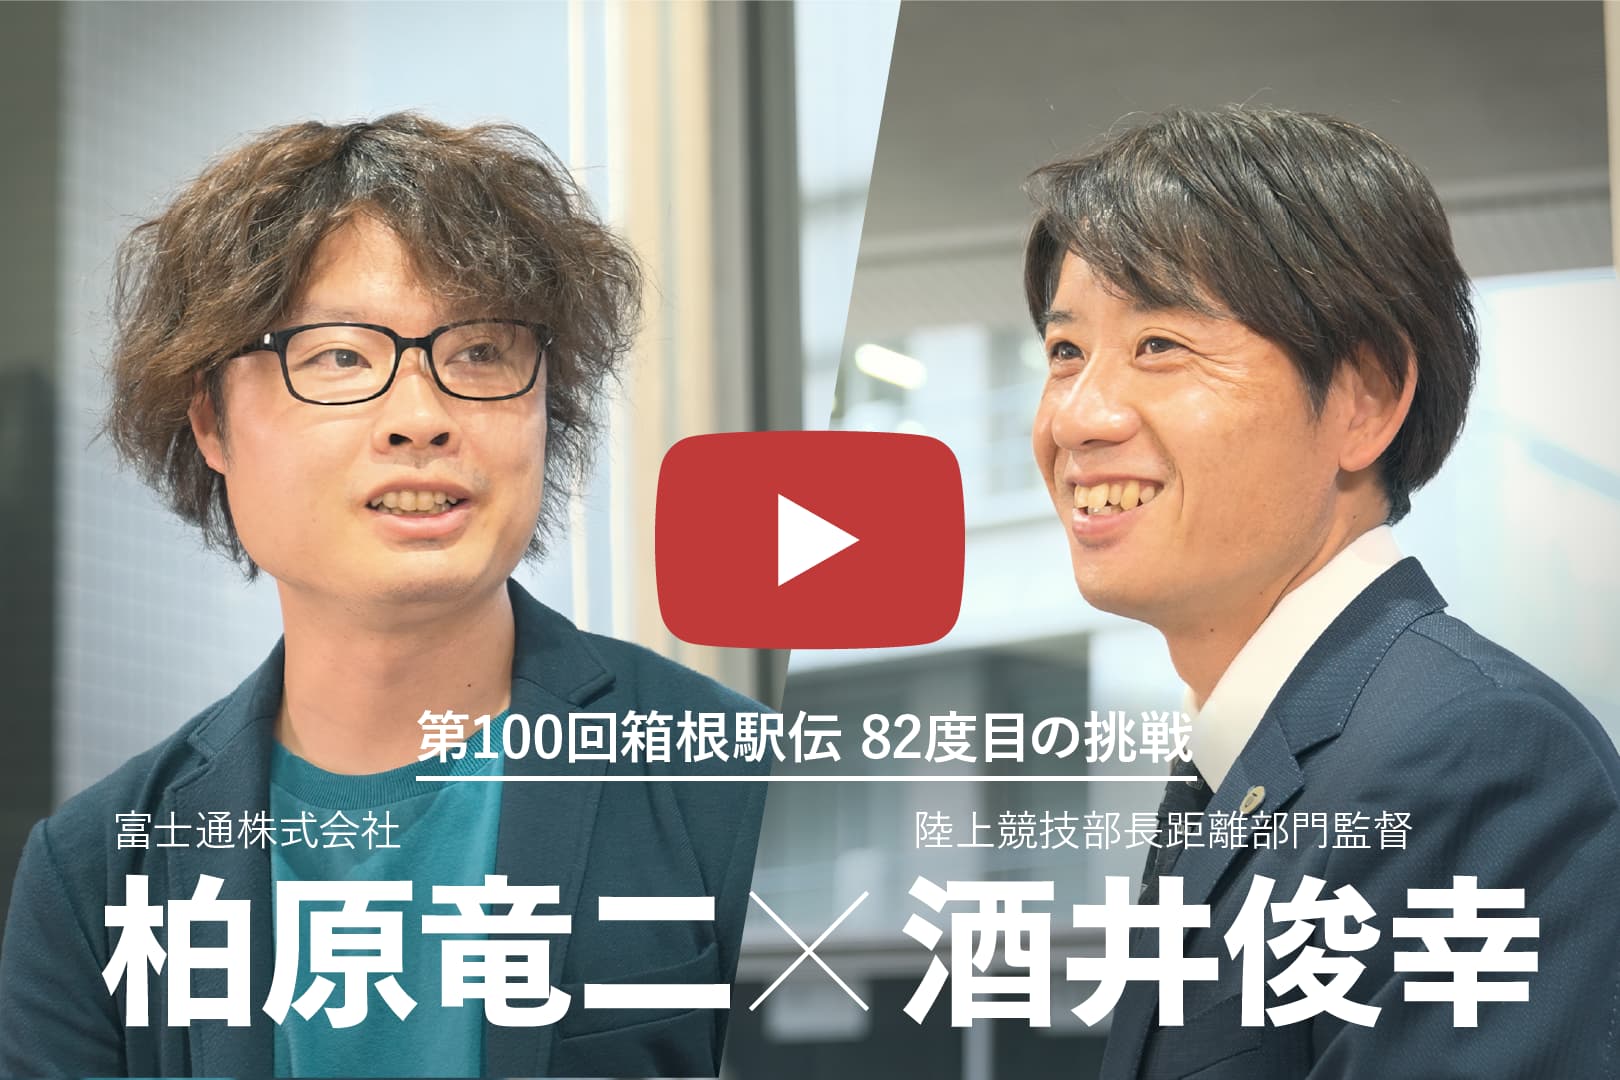 第100回箱根駅伝特別対談ムービー